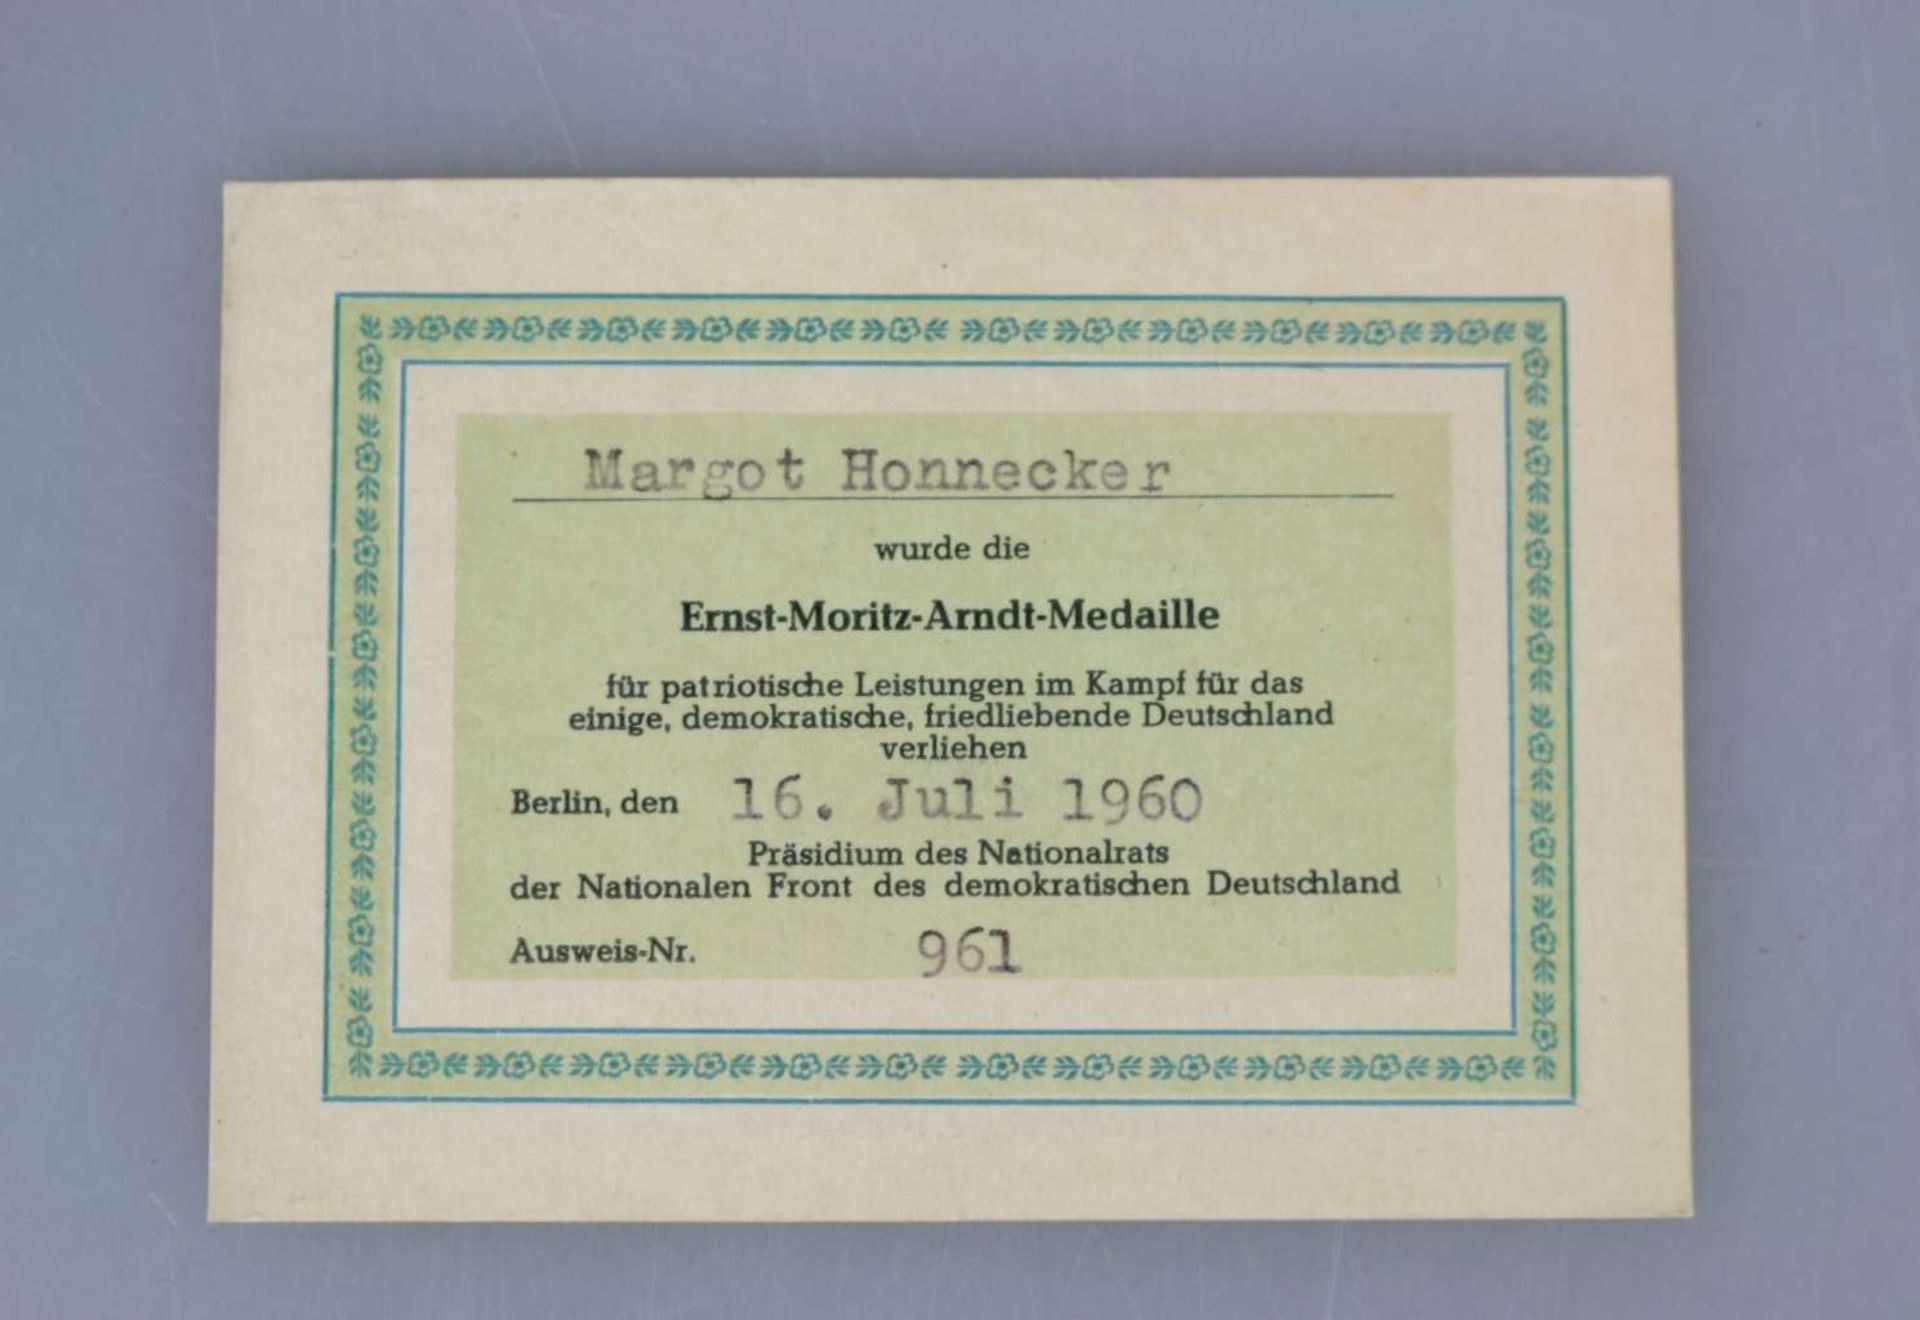 Margot Honecker, Verleihungsausweis - Image 2 of 4